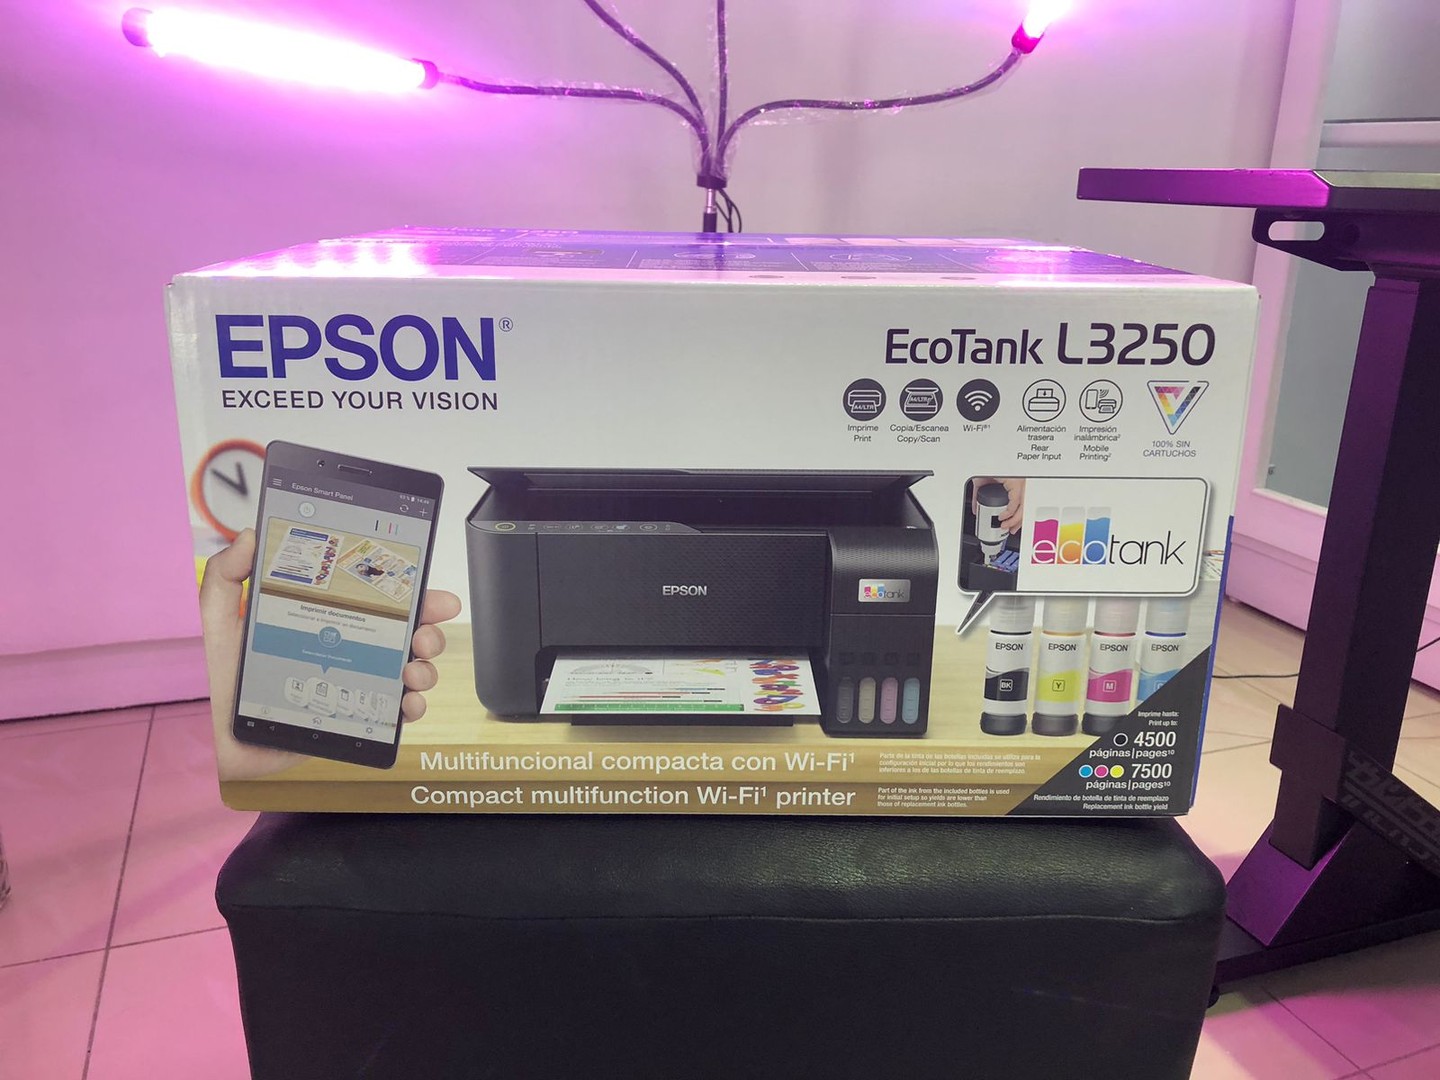 impresoras y scanners - Impresora Inalambrica y desde el celular Multifuncion Epson L3250 mas garantia 1